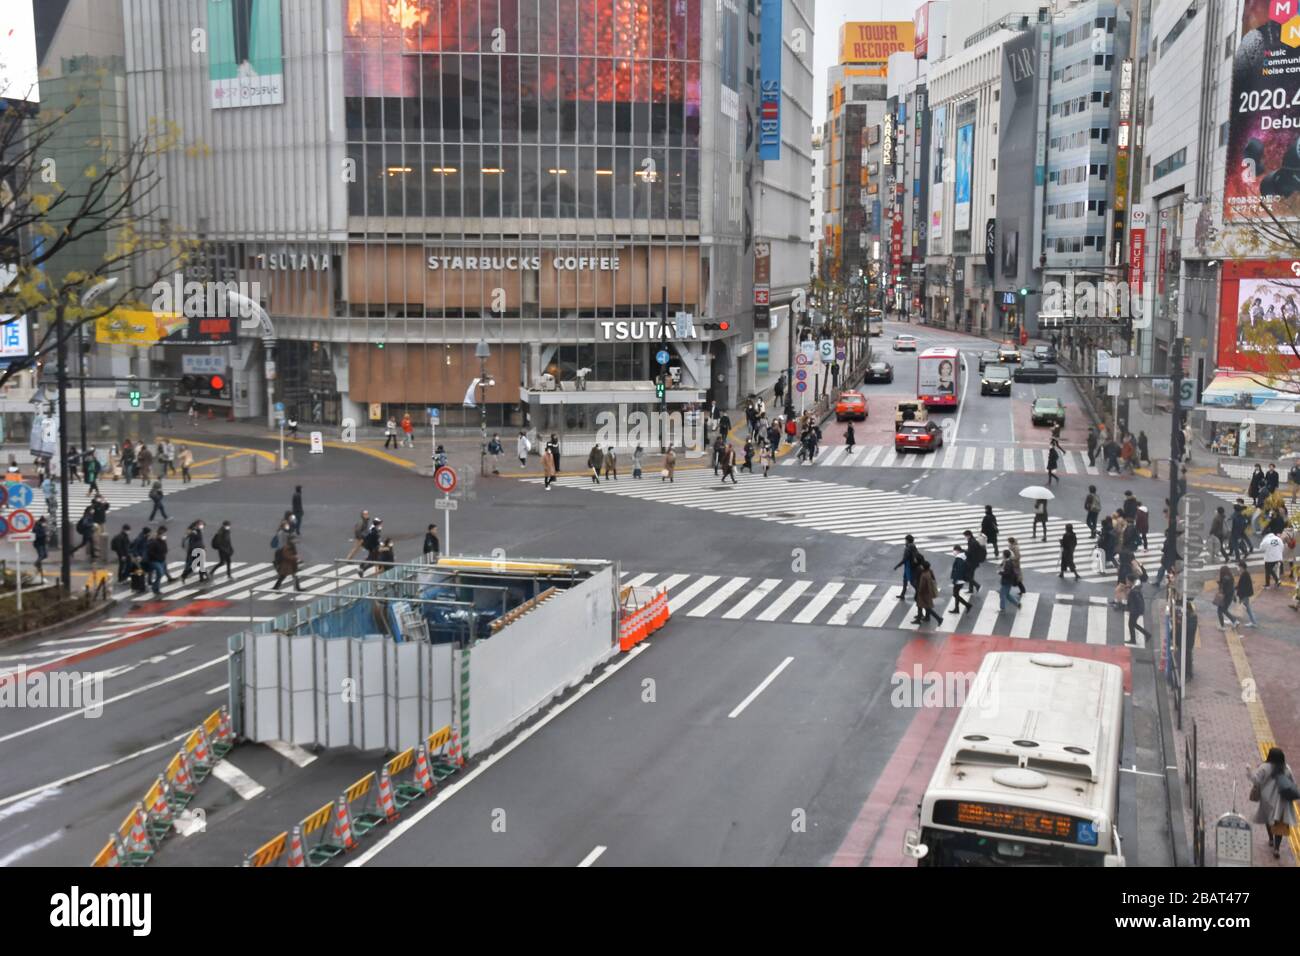 Tokio, Japan. März 2020. Fußgänger, die Gesichtsmasken tragen, passieren am Sonntag, 29. März 2020 eine Gerangel im Einkaufsviertel Shibuya in Tokio, Japan. Straßen in normalerweise belebten Tokioter Gegenden wie dem Shibuya-, Shinjuku- und dem Ginza-Einkaufsviertel sind leicht bevölkert. Foto von Keizo Mori/UPI Credit: UPI/Alamy Live News Stockfoto